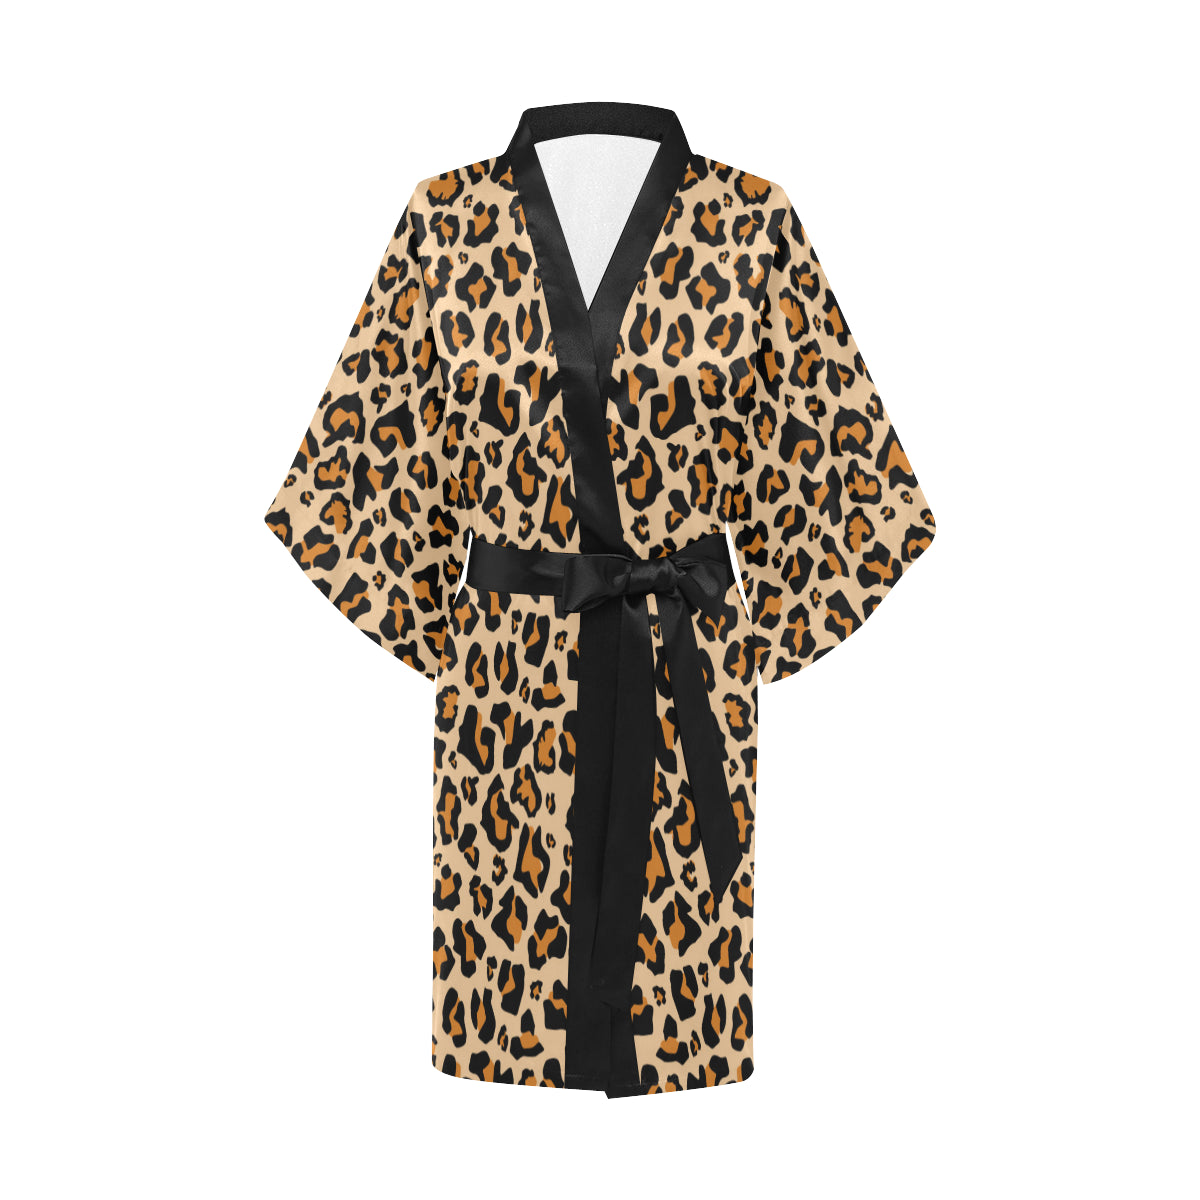 Leopard Print Kimono Robe, Animal Cheetah Women's Lounge Peignoir Sleepwear Sexy Short Bathrobe Pajamas Starcove Fashion